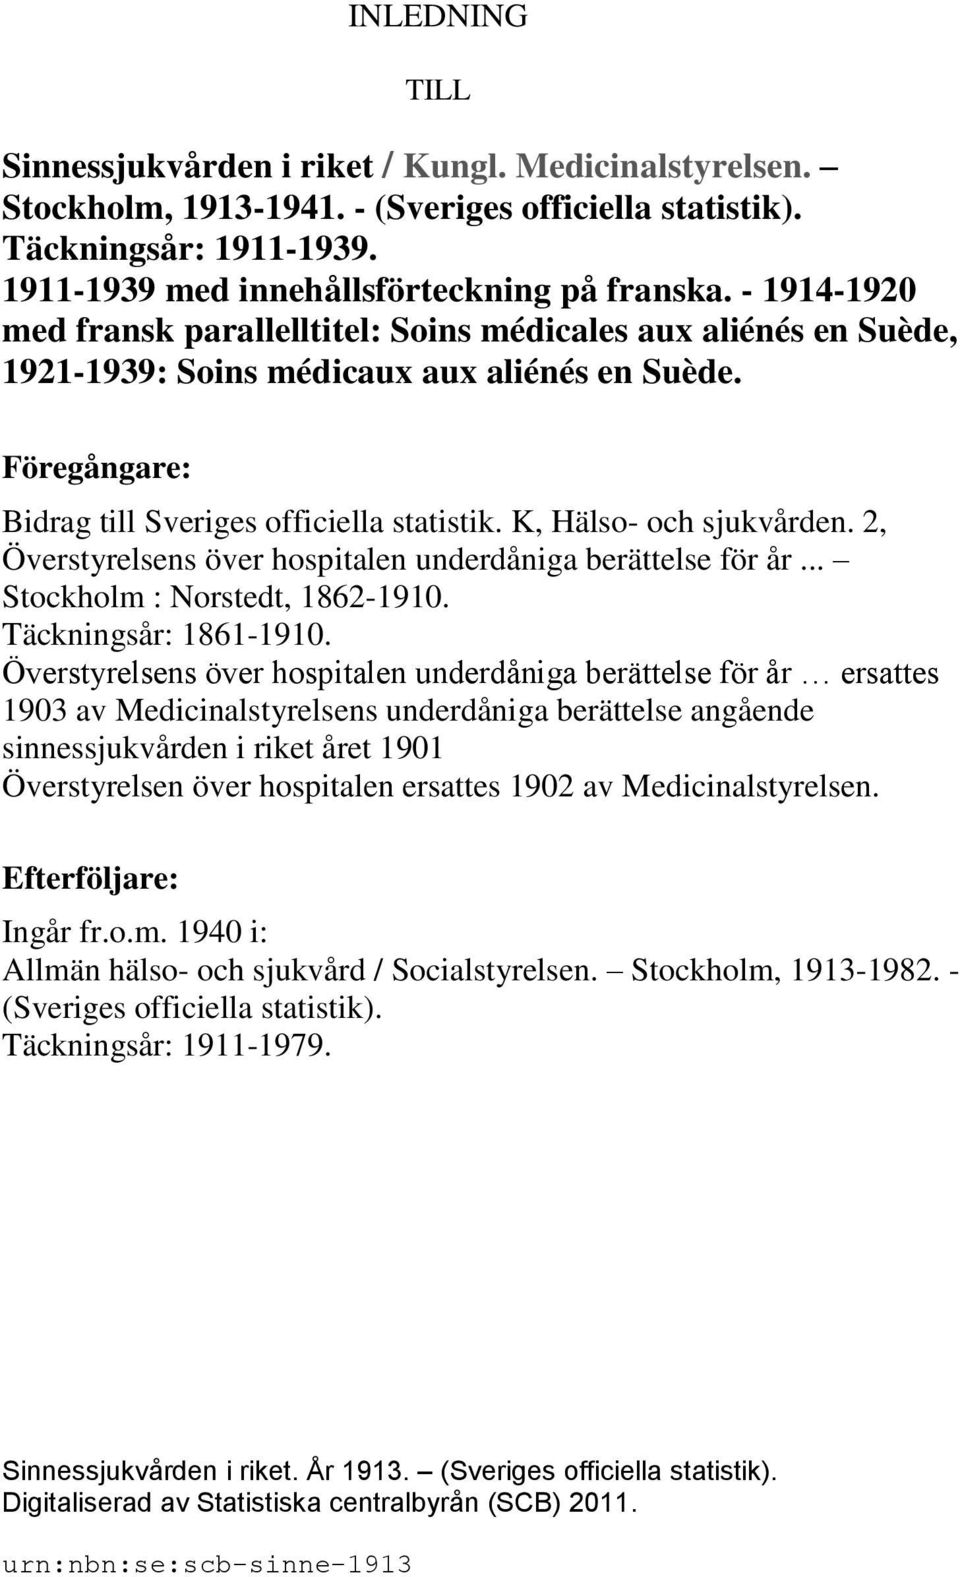 K, Hälso- och sjukvården. 2, Överstyrelsens över hospitalen underdåniga berättelse för år... Stockholm : Norstedt, 1862-1910. Täckningsår: 1861-1910.